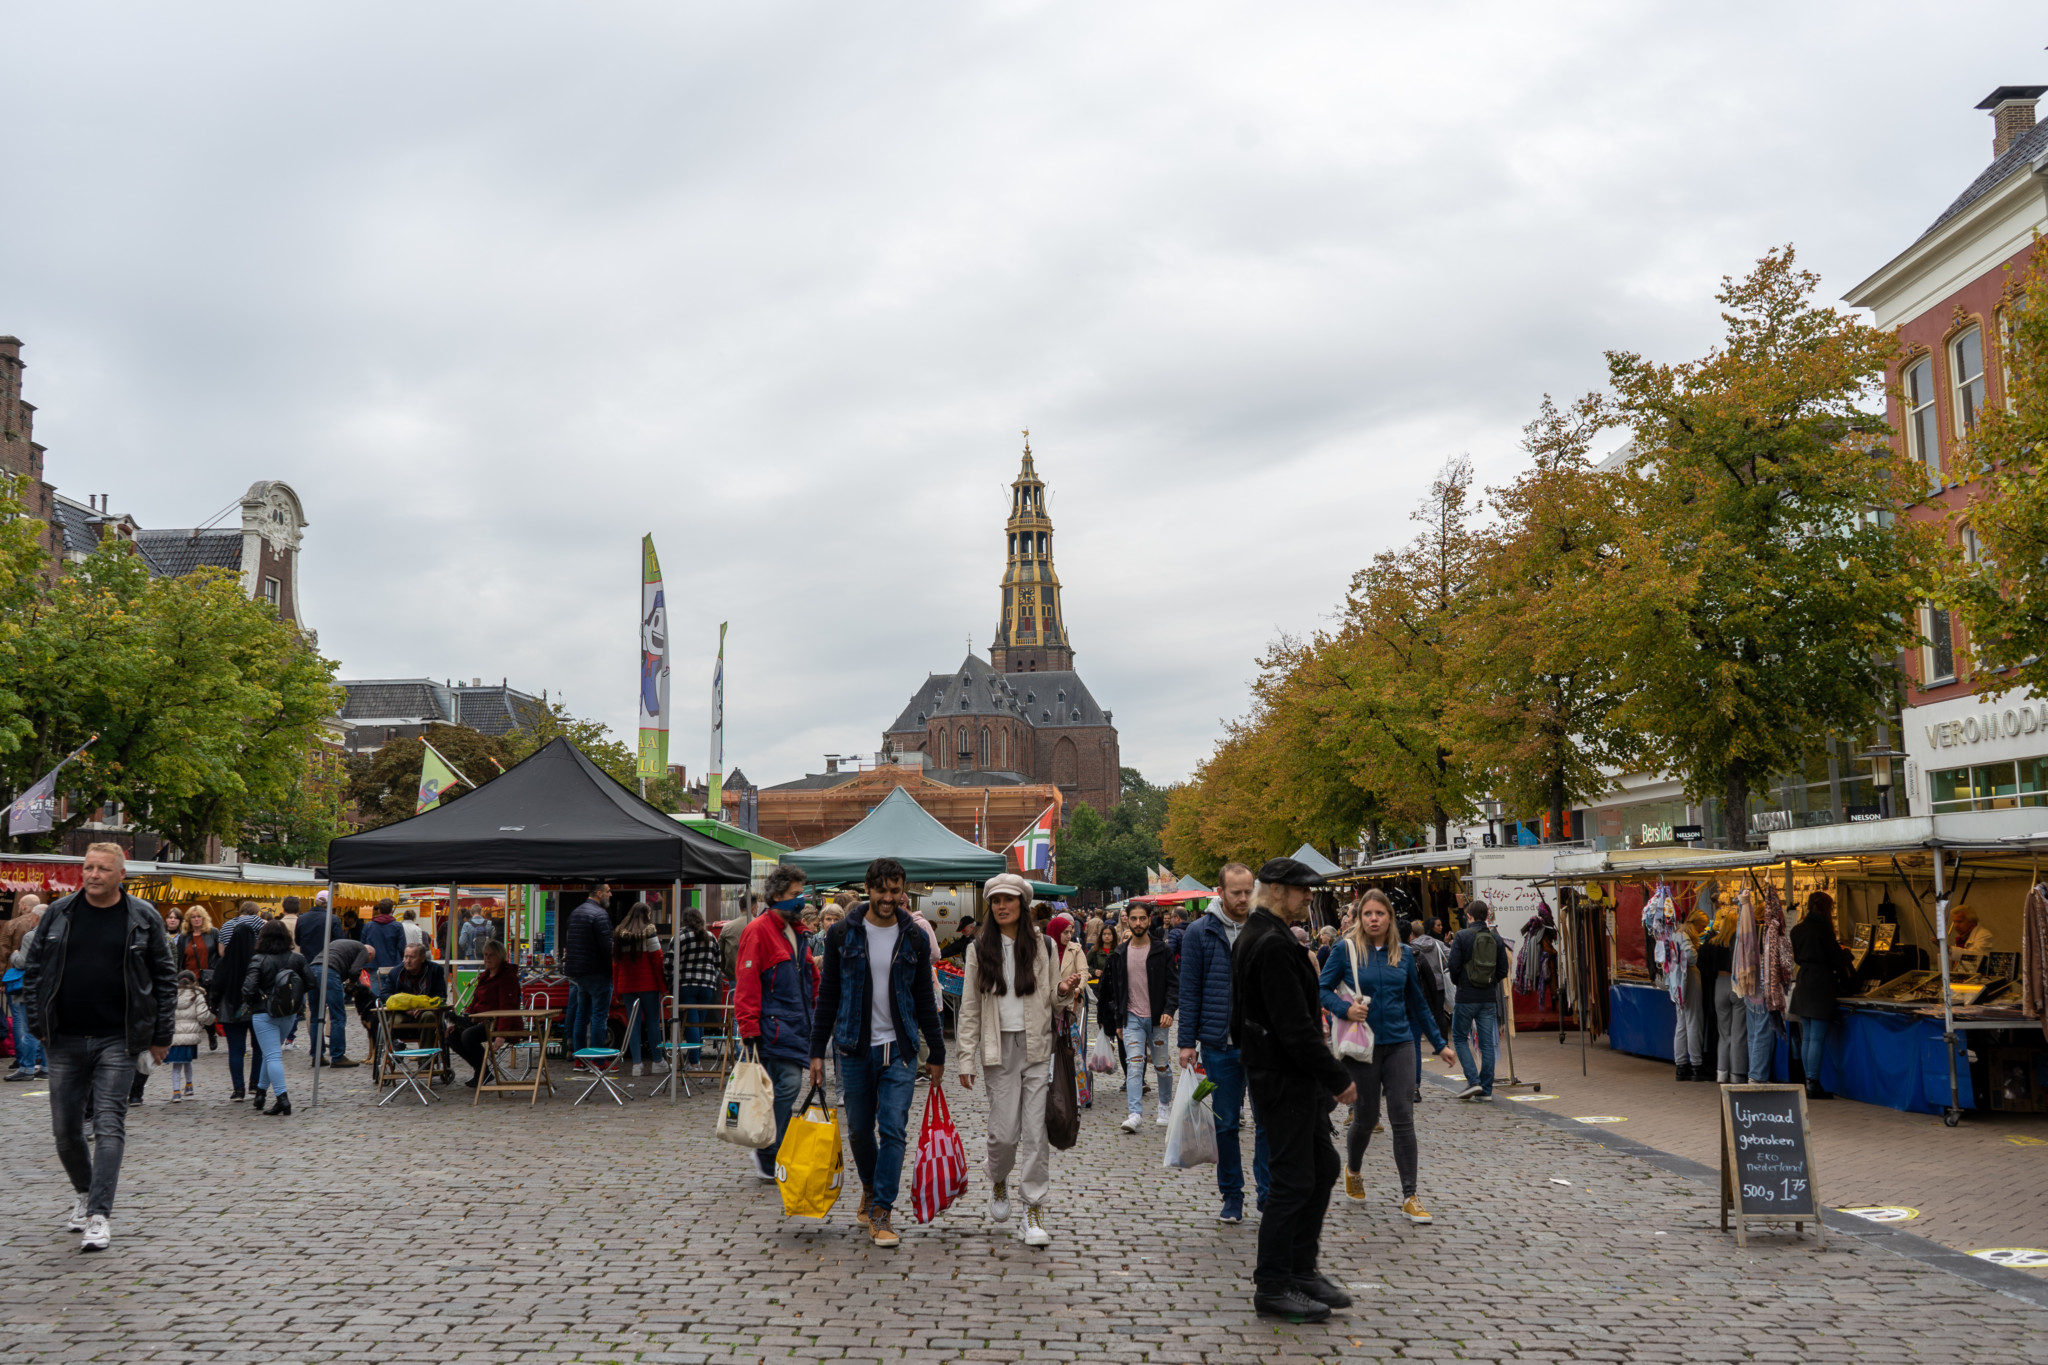 Markt auf dem Grote Markt in Groningen